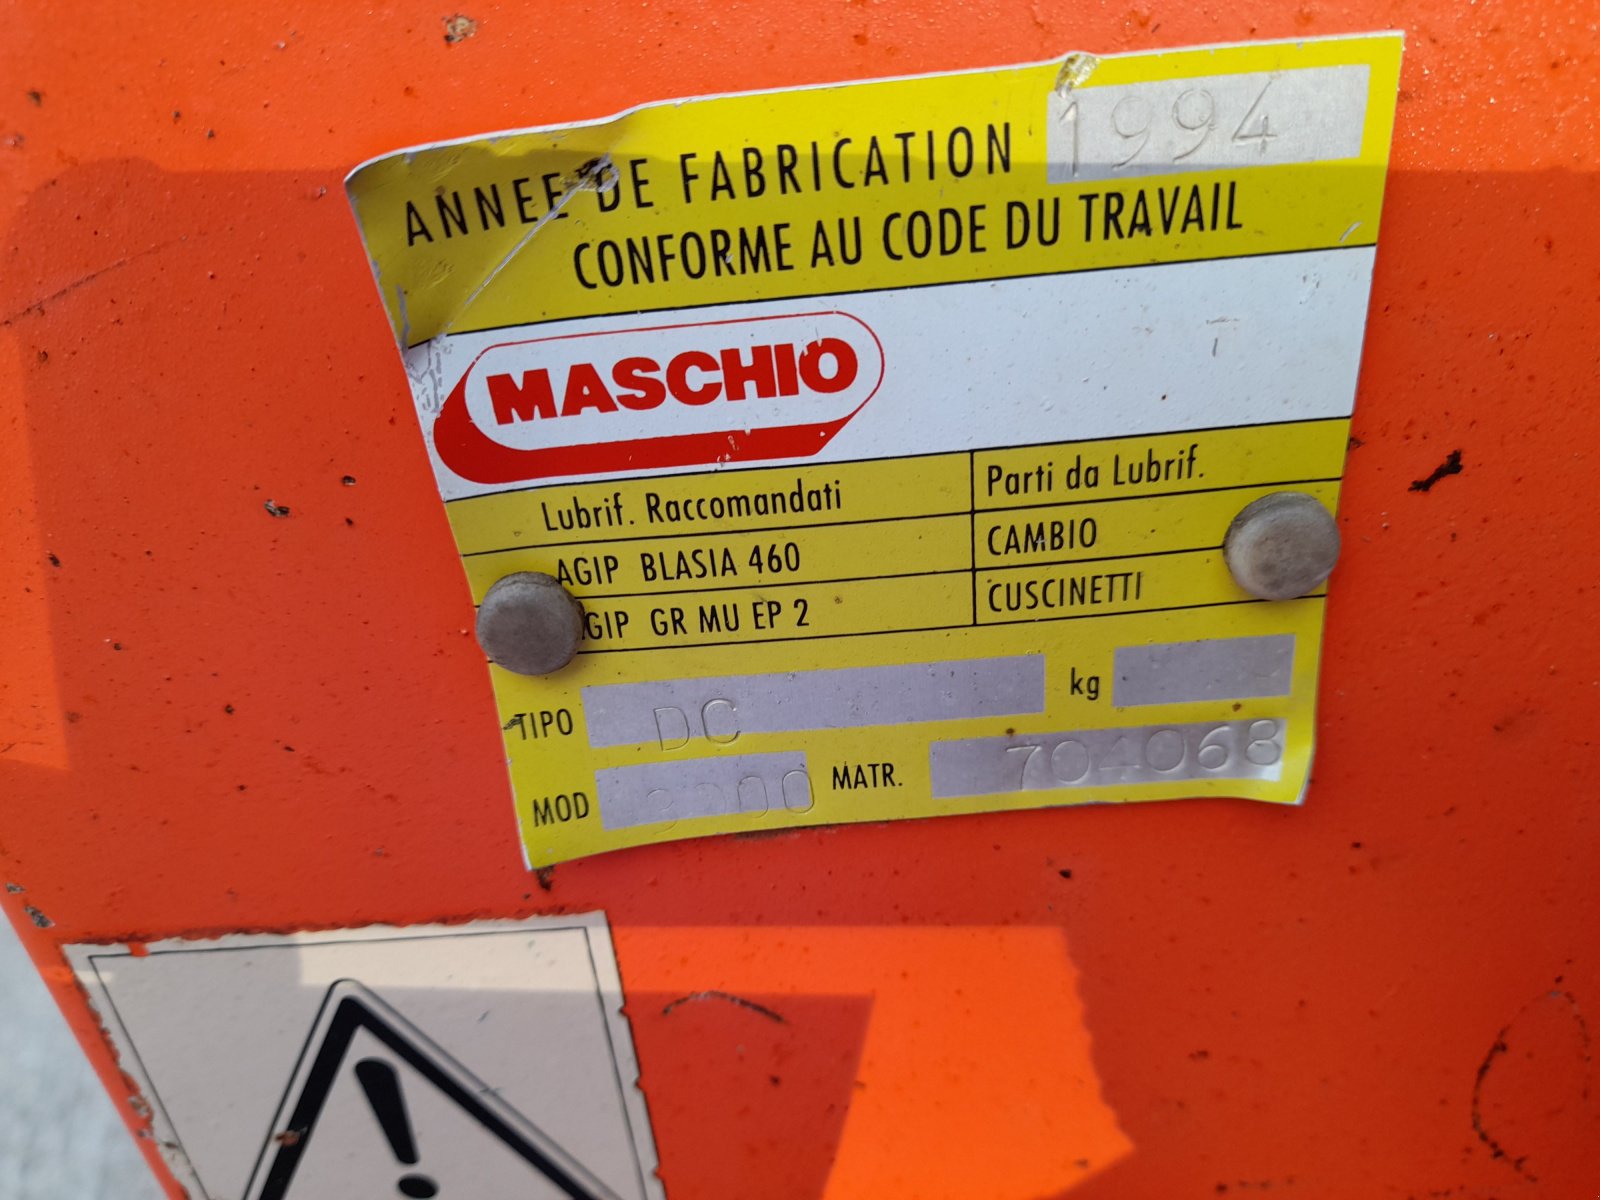 Kreiselegge des Typs Maschio DC3000, Gebrauchtmaschine in les hayons (Bild 4)